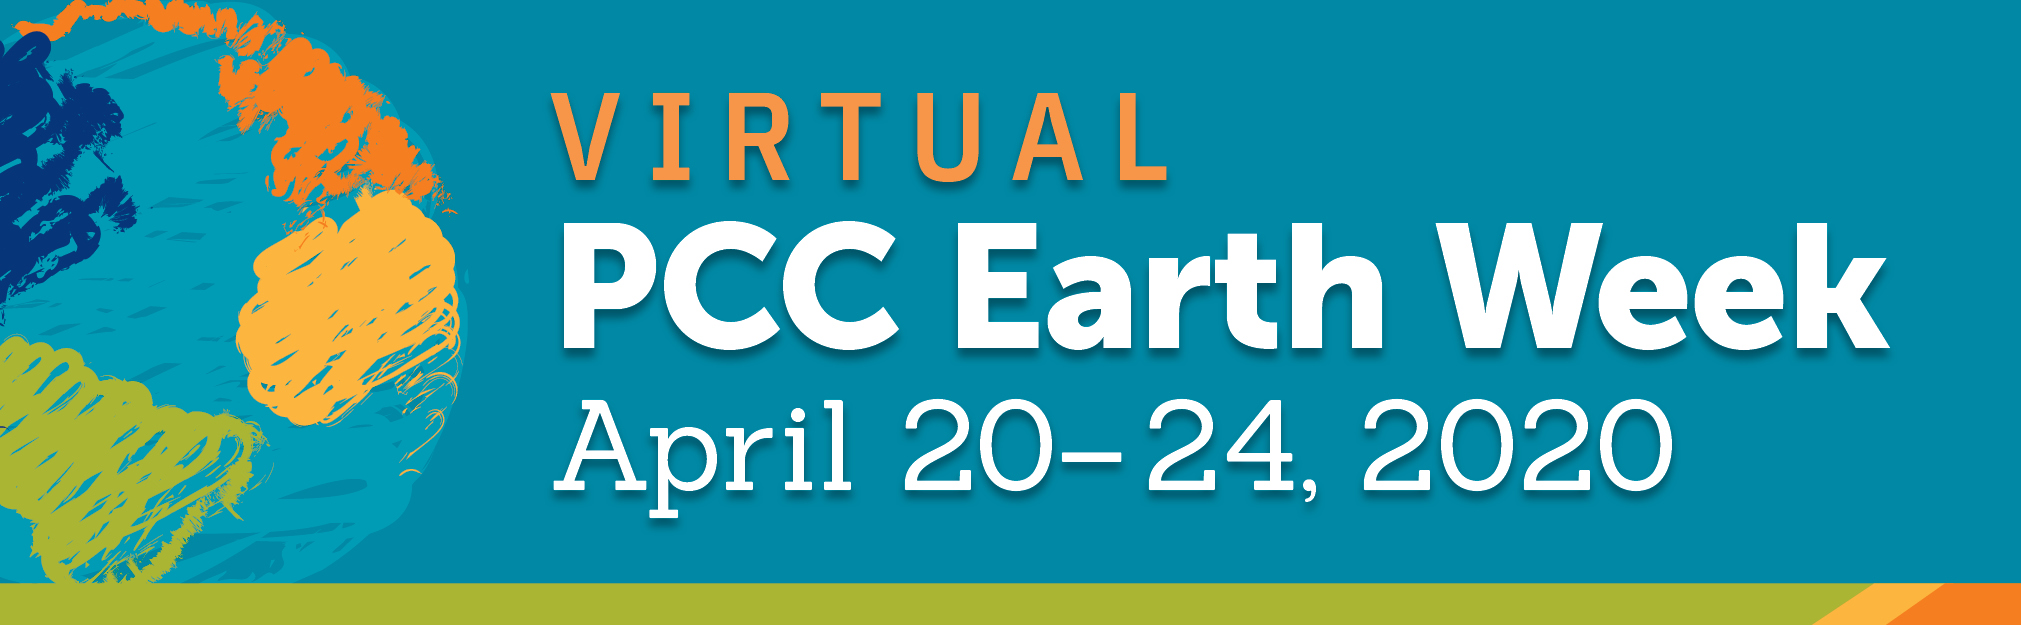 Virtual PCC Earth Week, April 20-24,2020